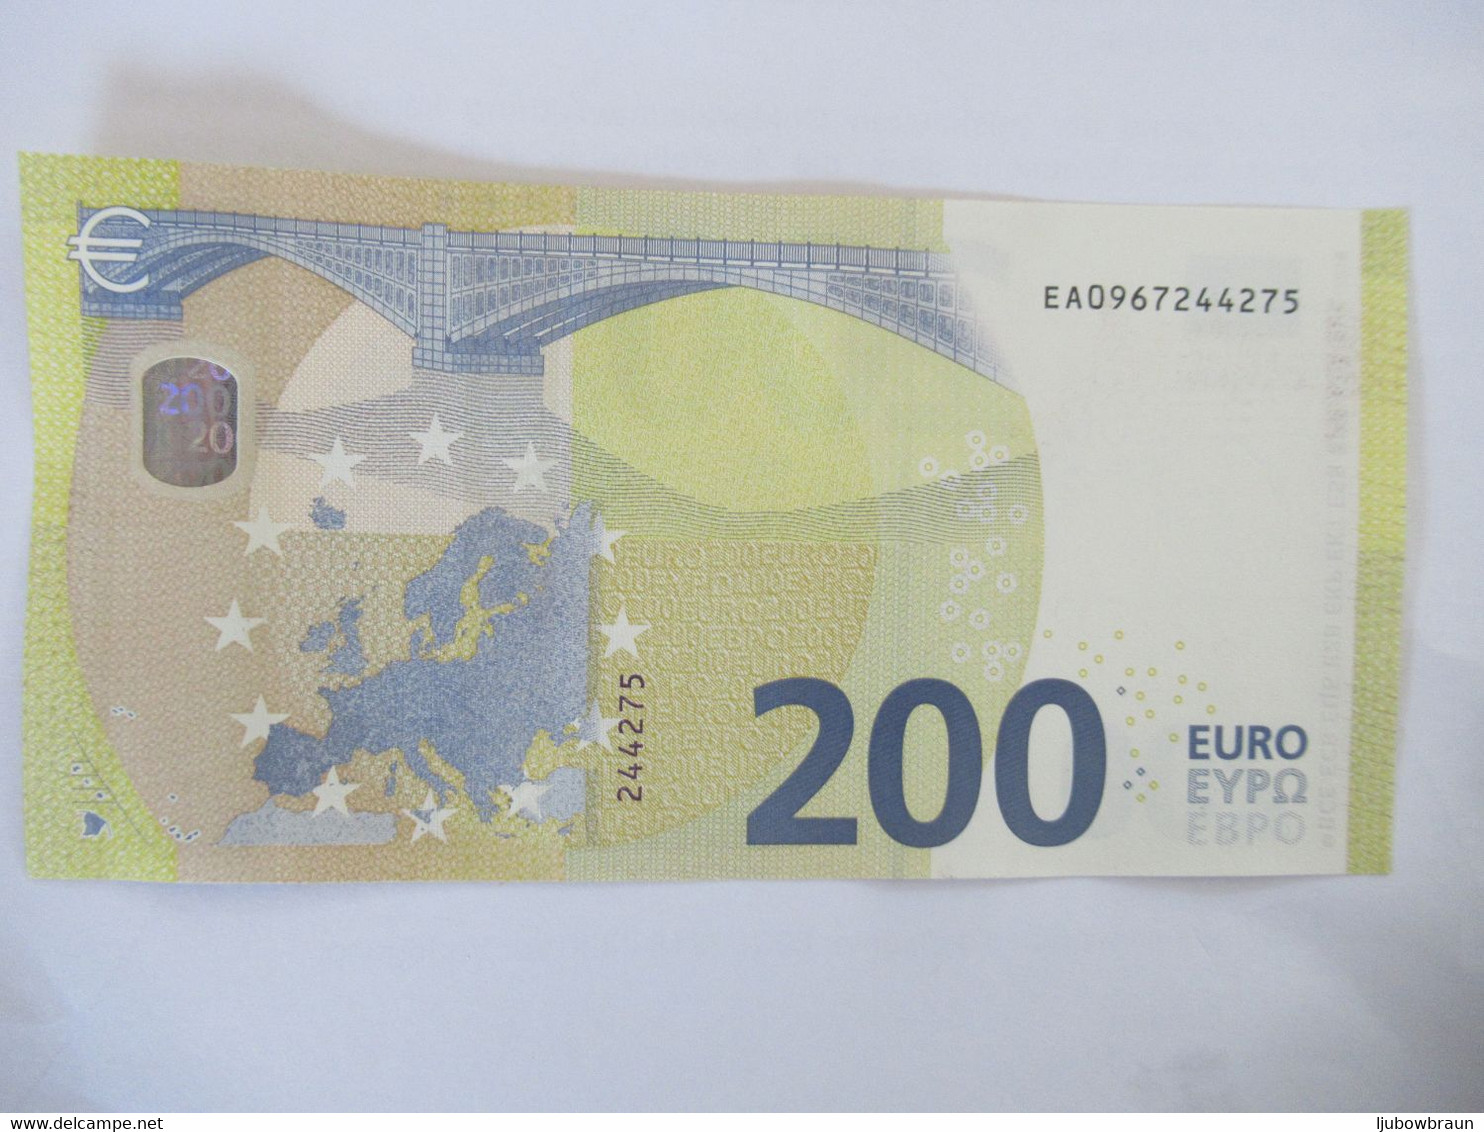 200 Euro-Schein Unc. Lagarde EA - 200 Euro